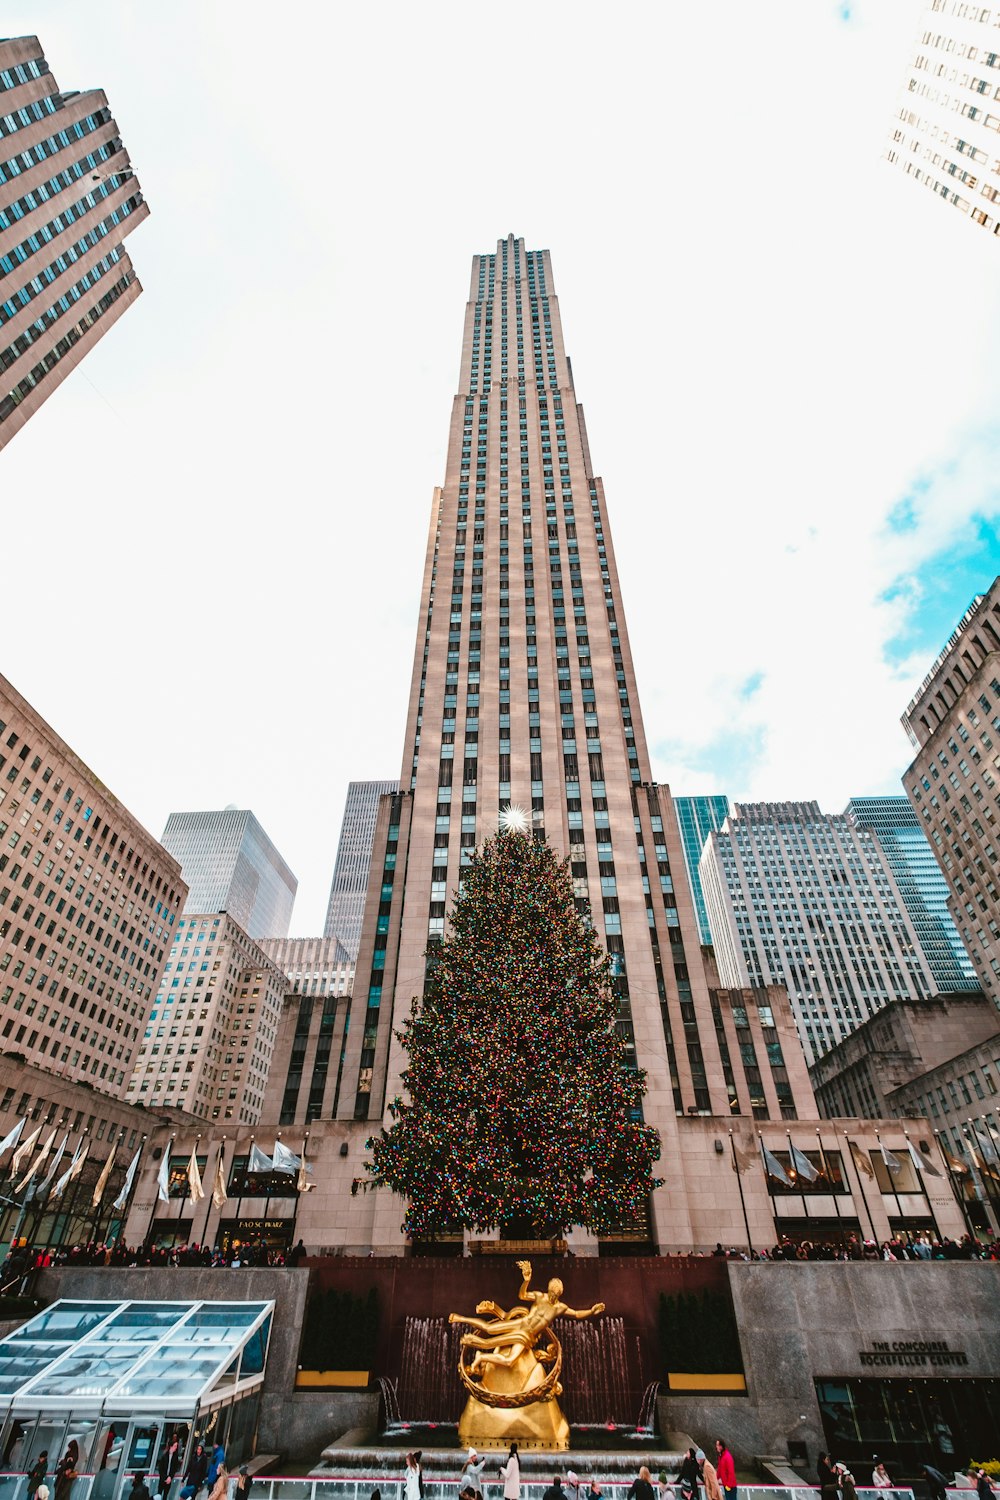 Rockefeller Plaza in New York City